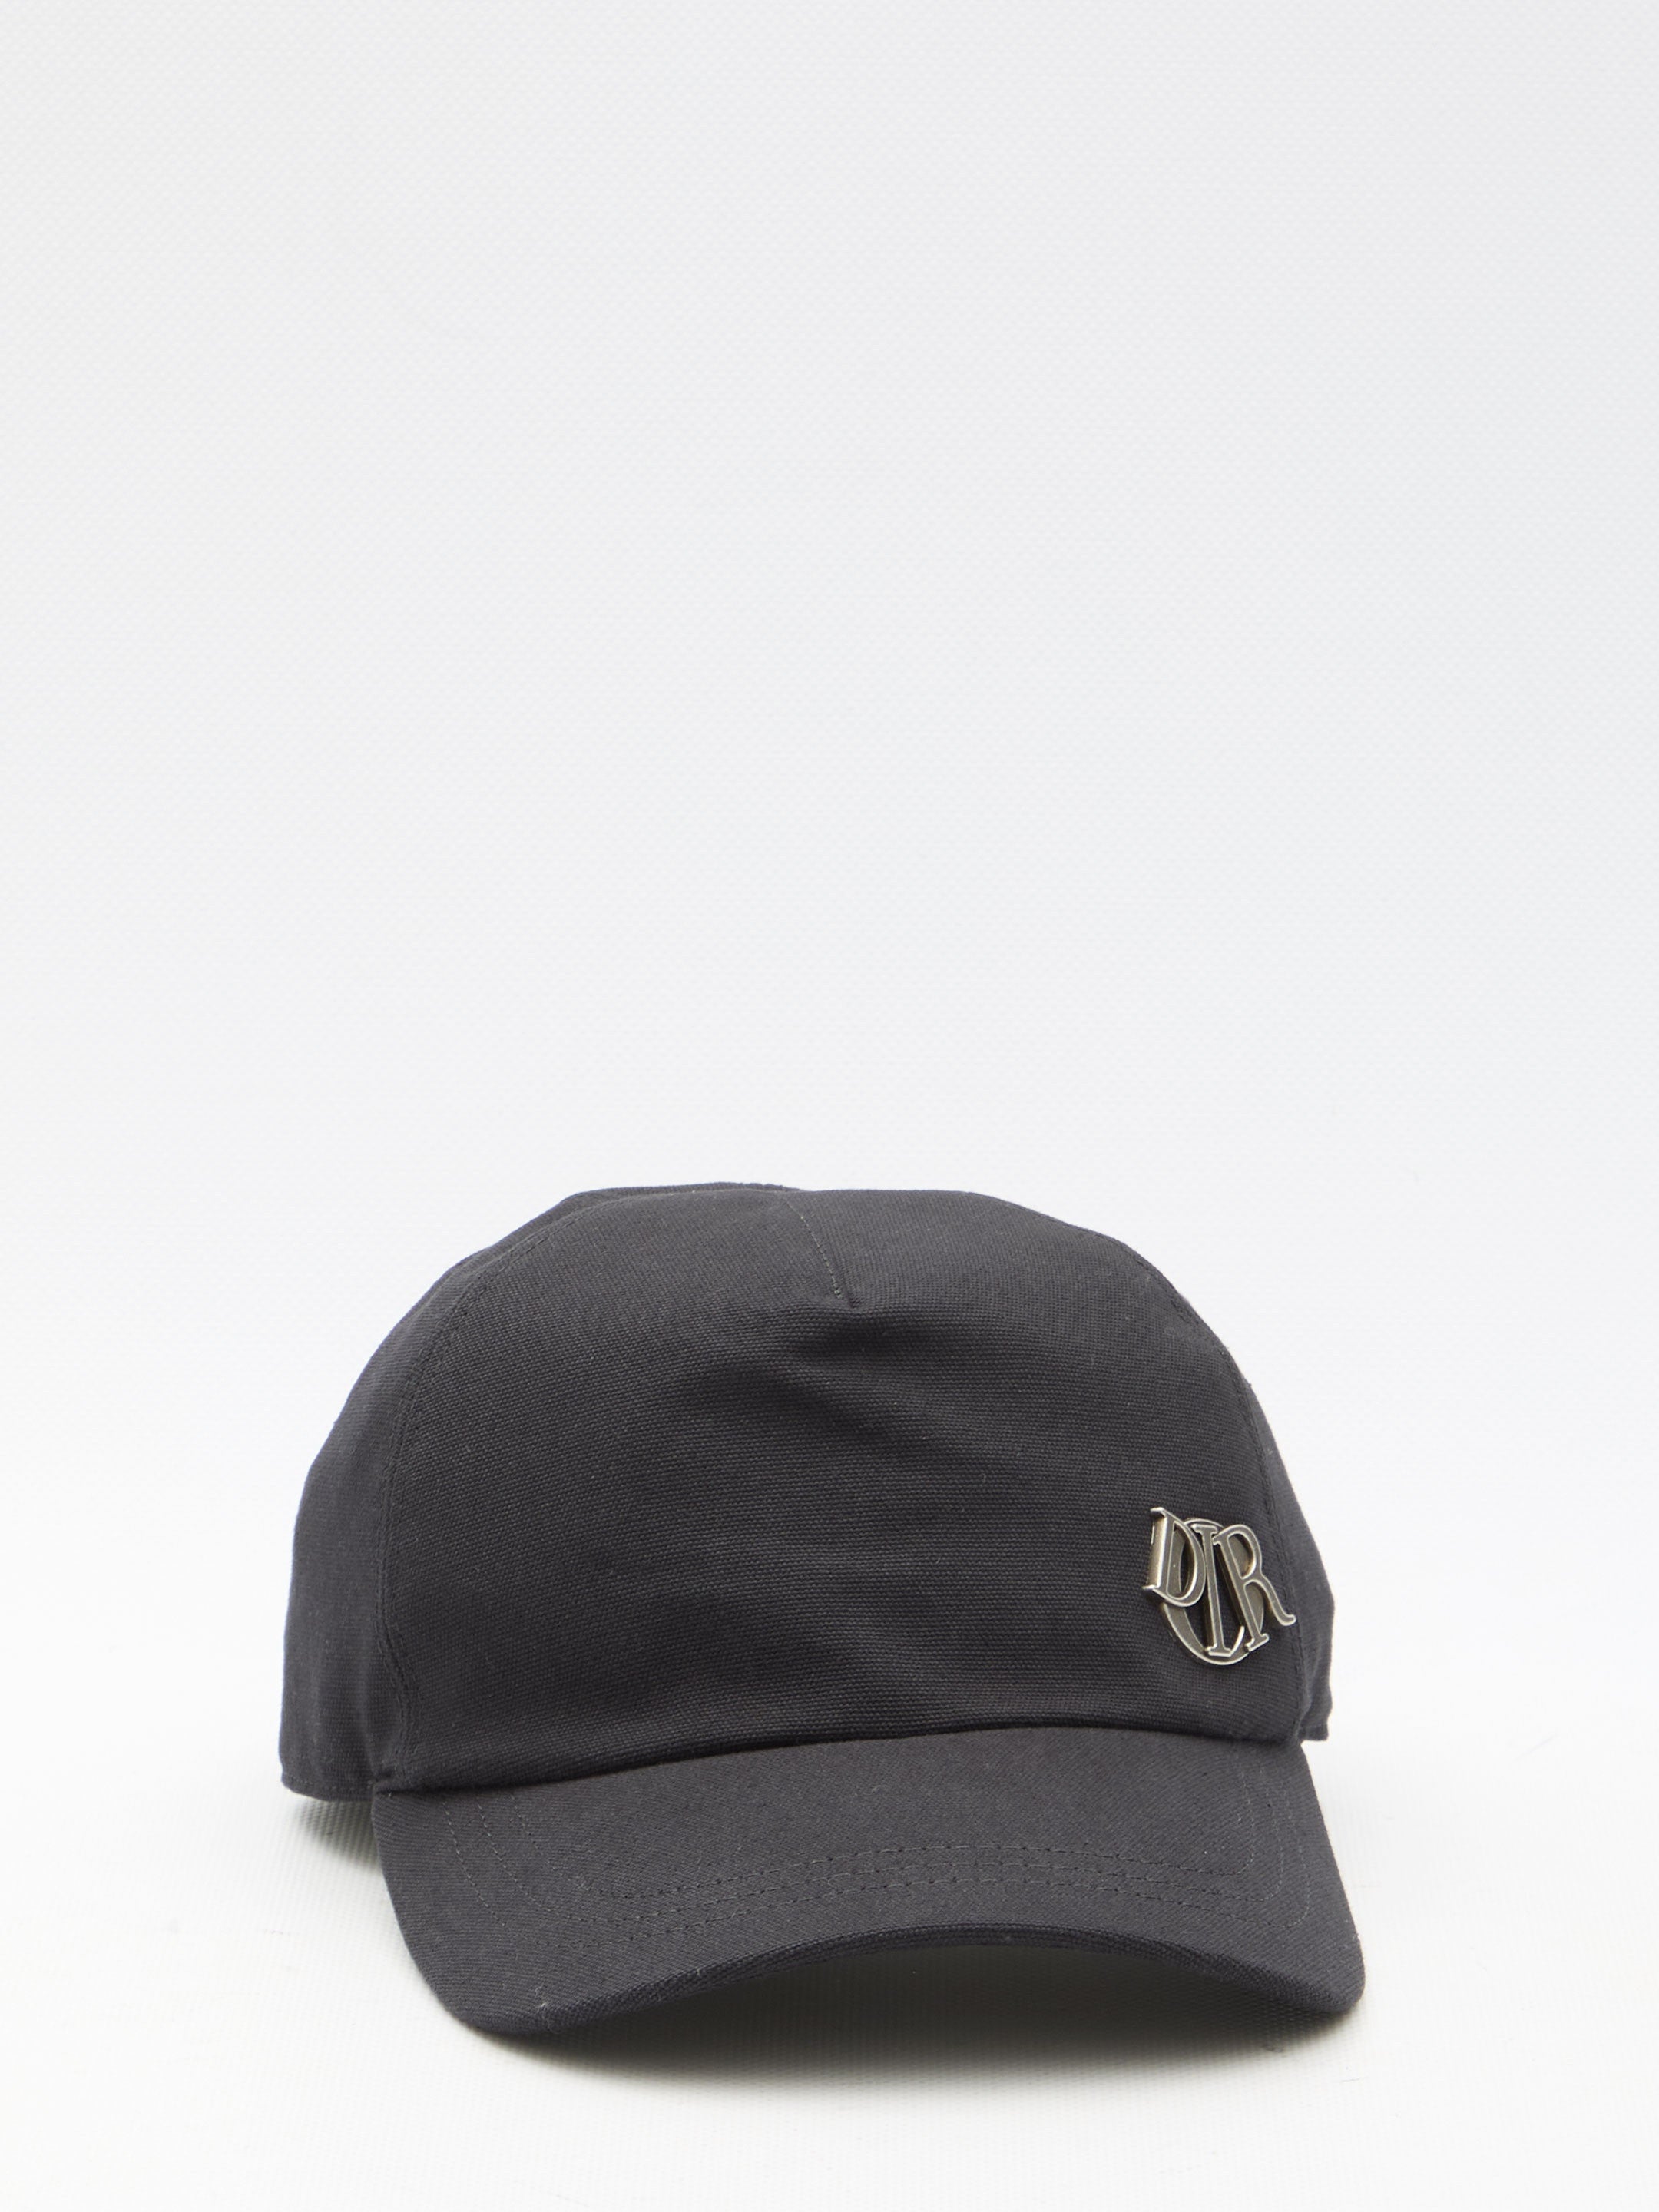 Dior Charm baseball cap